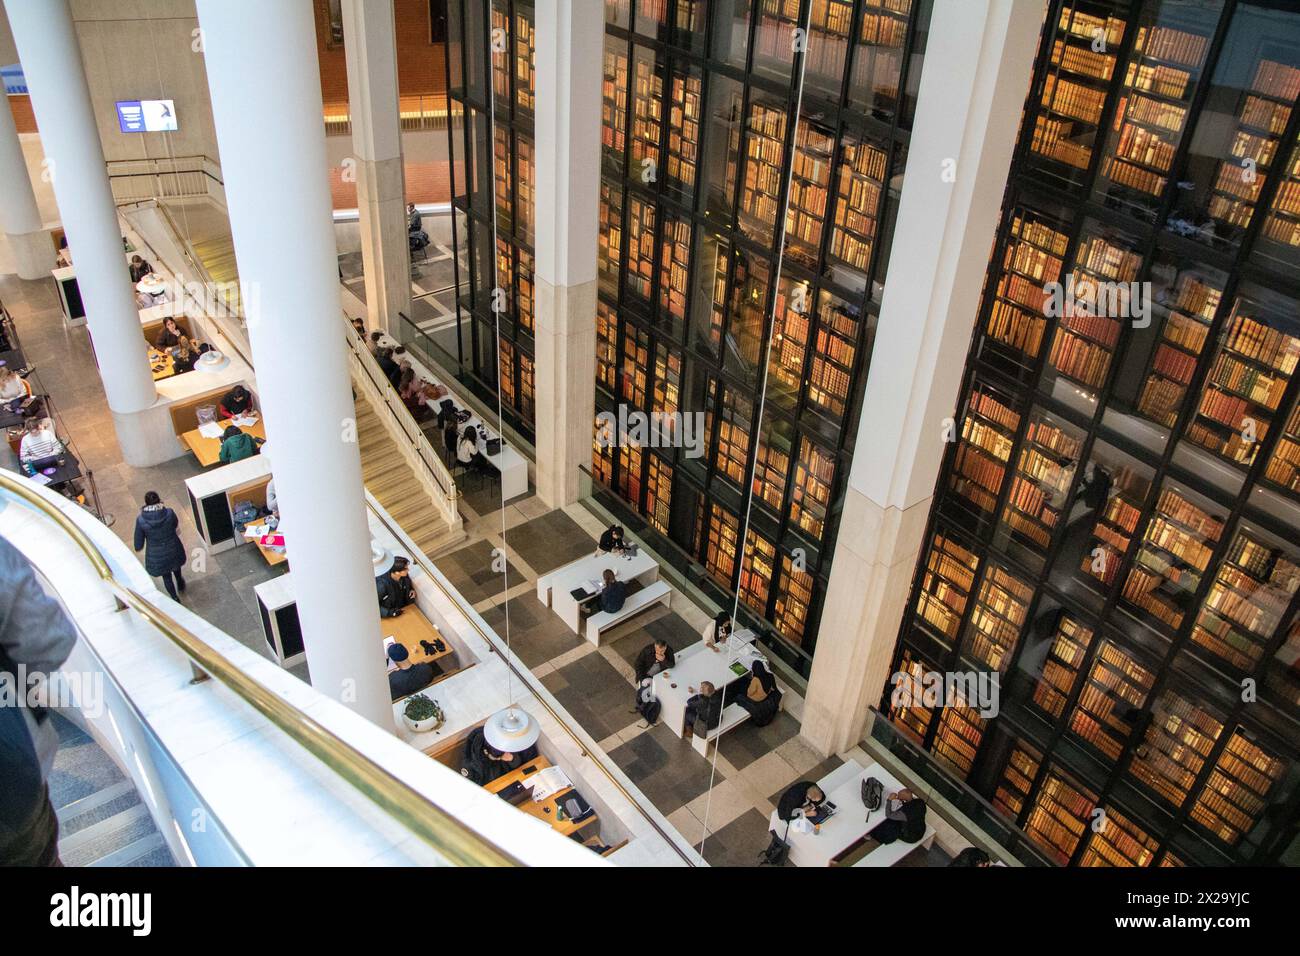 Profitez de la King's Library au sein de la British Library Banque D'Images